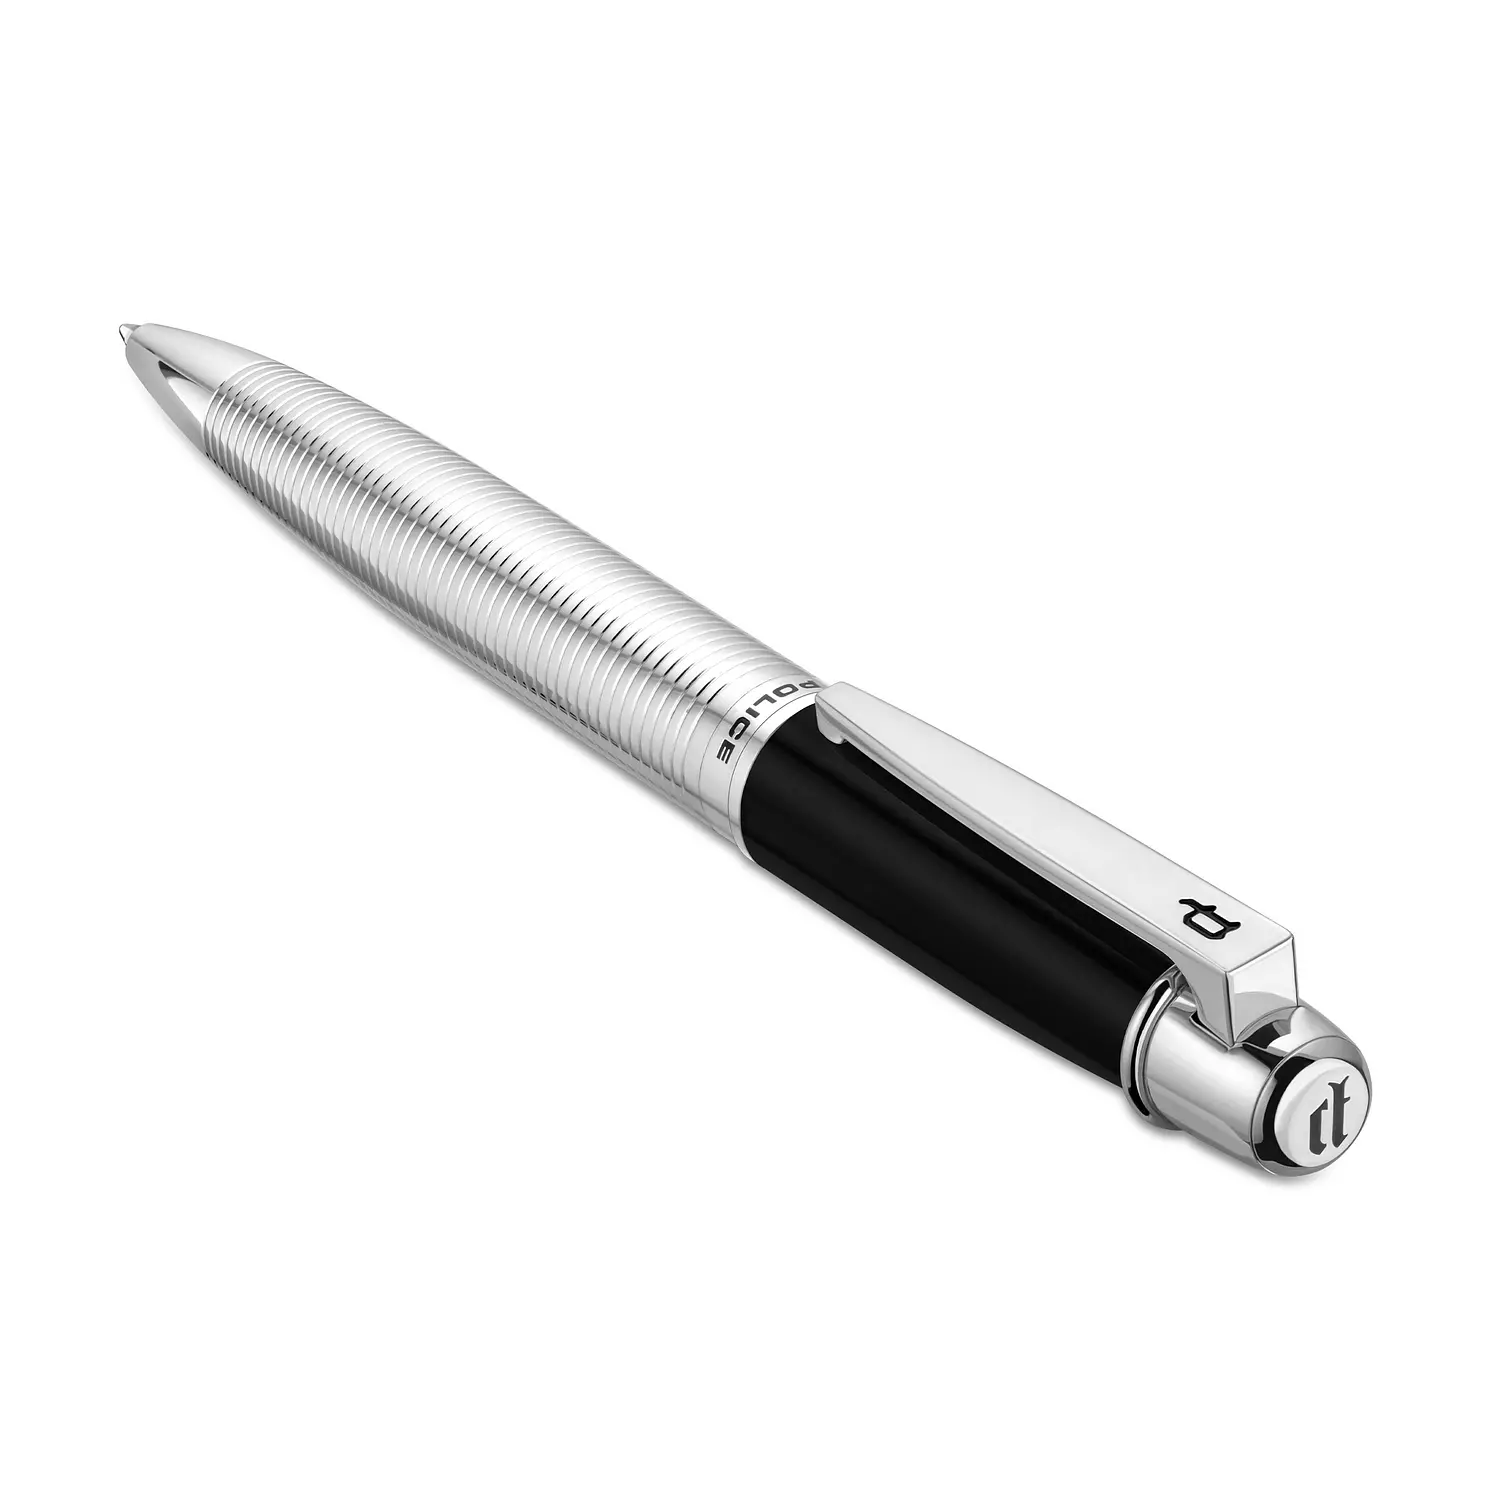 POLICE - Takota Pen For Men Black & Silver Color - PERGR0001401 1